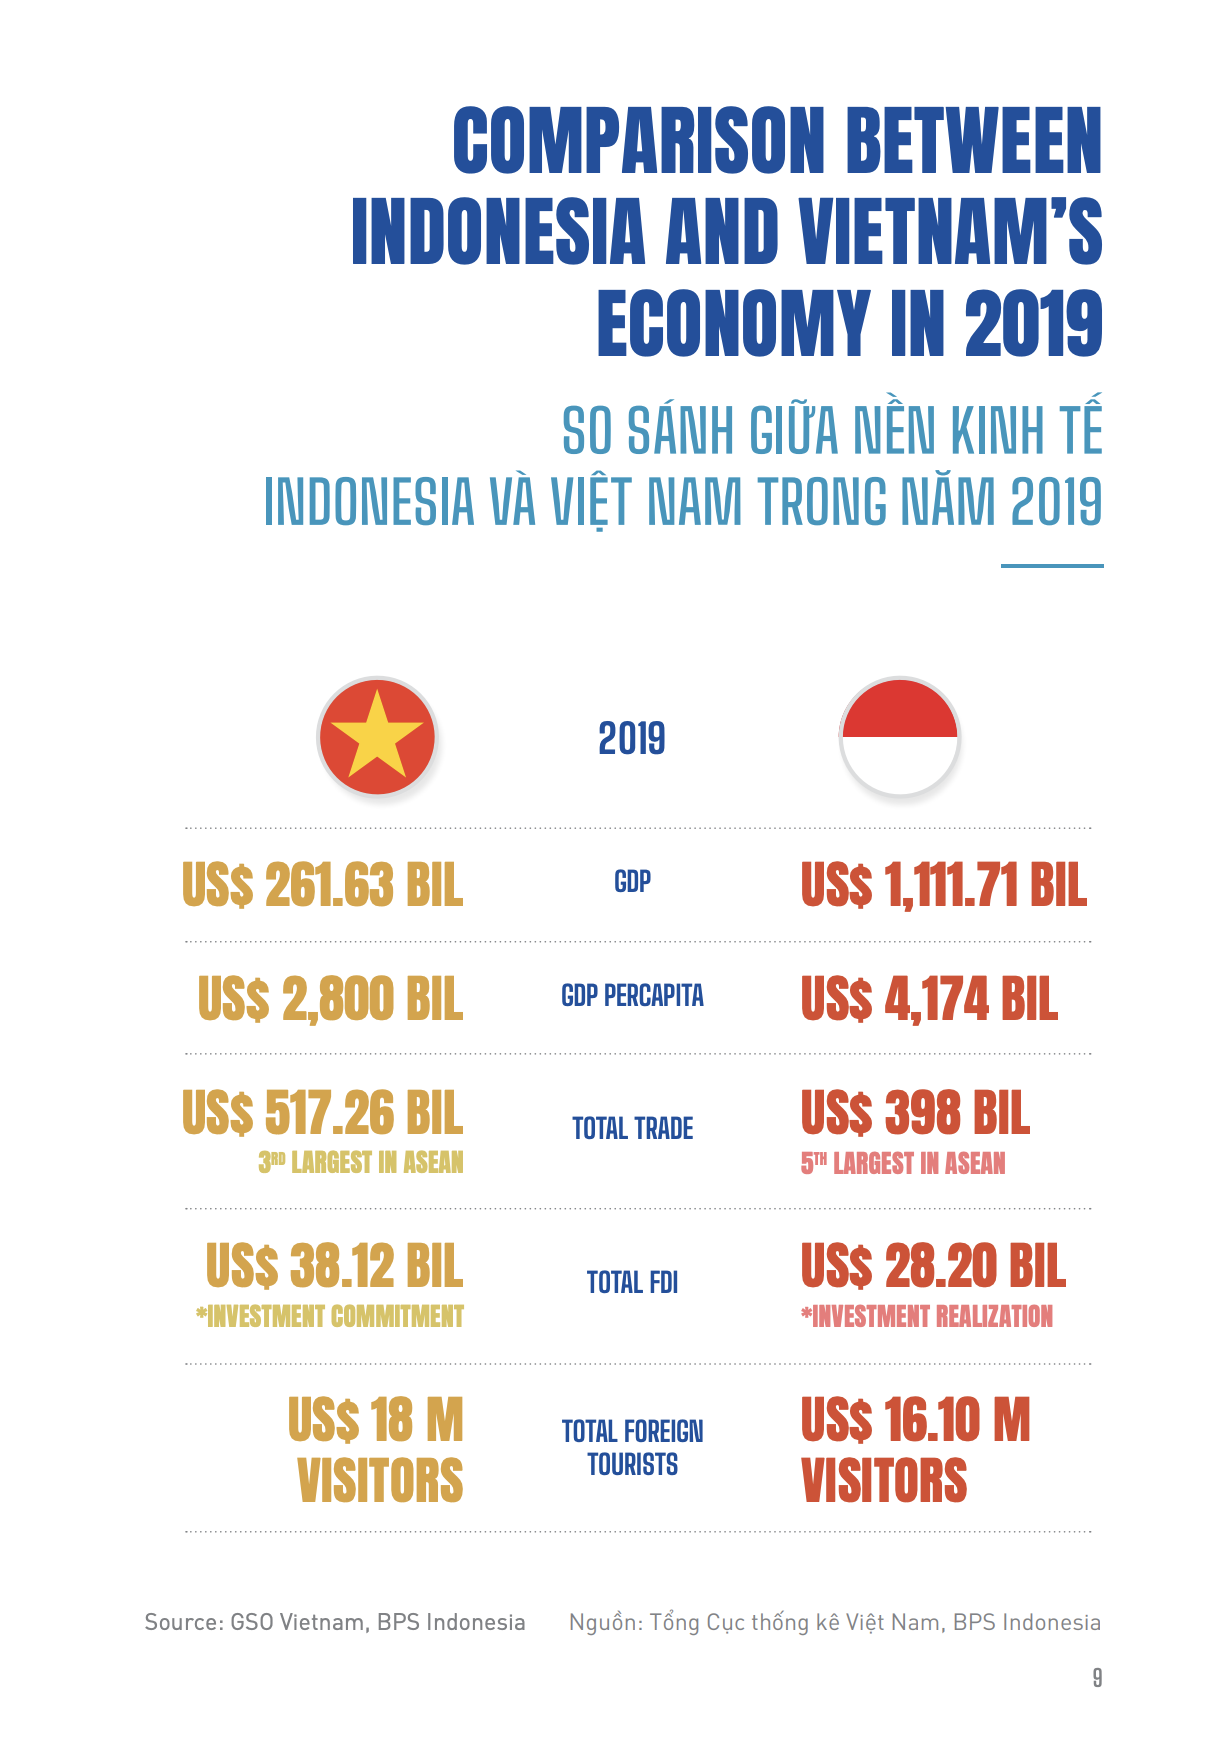 Người dân Việt Nam nghèo hơn Indonesia Óc Eo chứng tỏ Việt Nam đang đi lên và có tiềm năng phát triển to lớn. Nỗ lực và sự cố gắng không ngừng của chính phủ và đồng bào sẽ giúp đất nước ngày càng phát triển và giàu có hơn. Hãy cùng nhau đóng góp và phát triển đất nước Việt Nam.